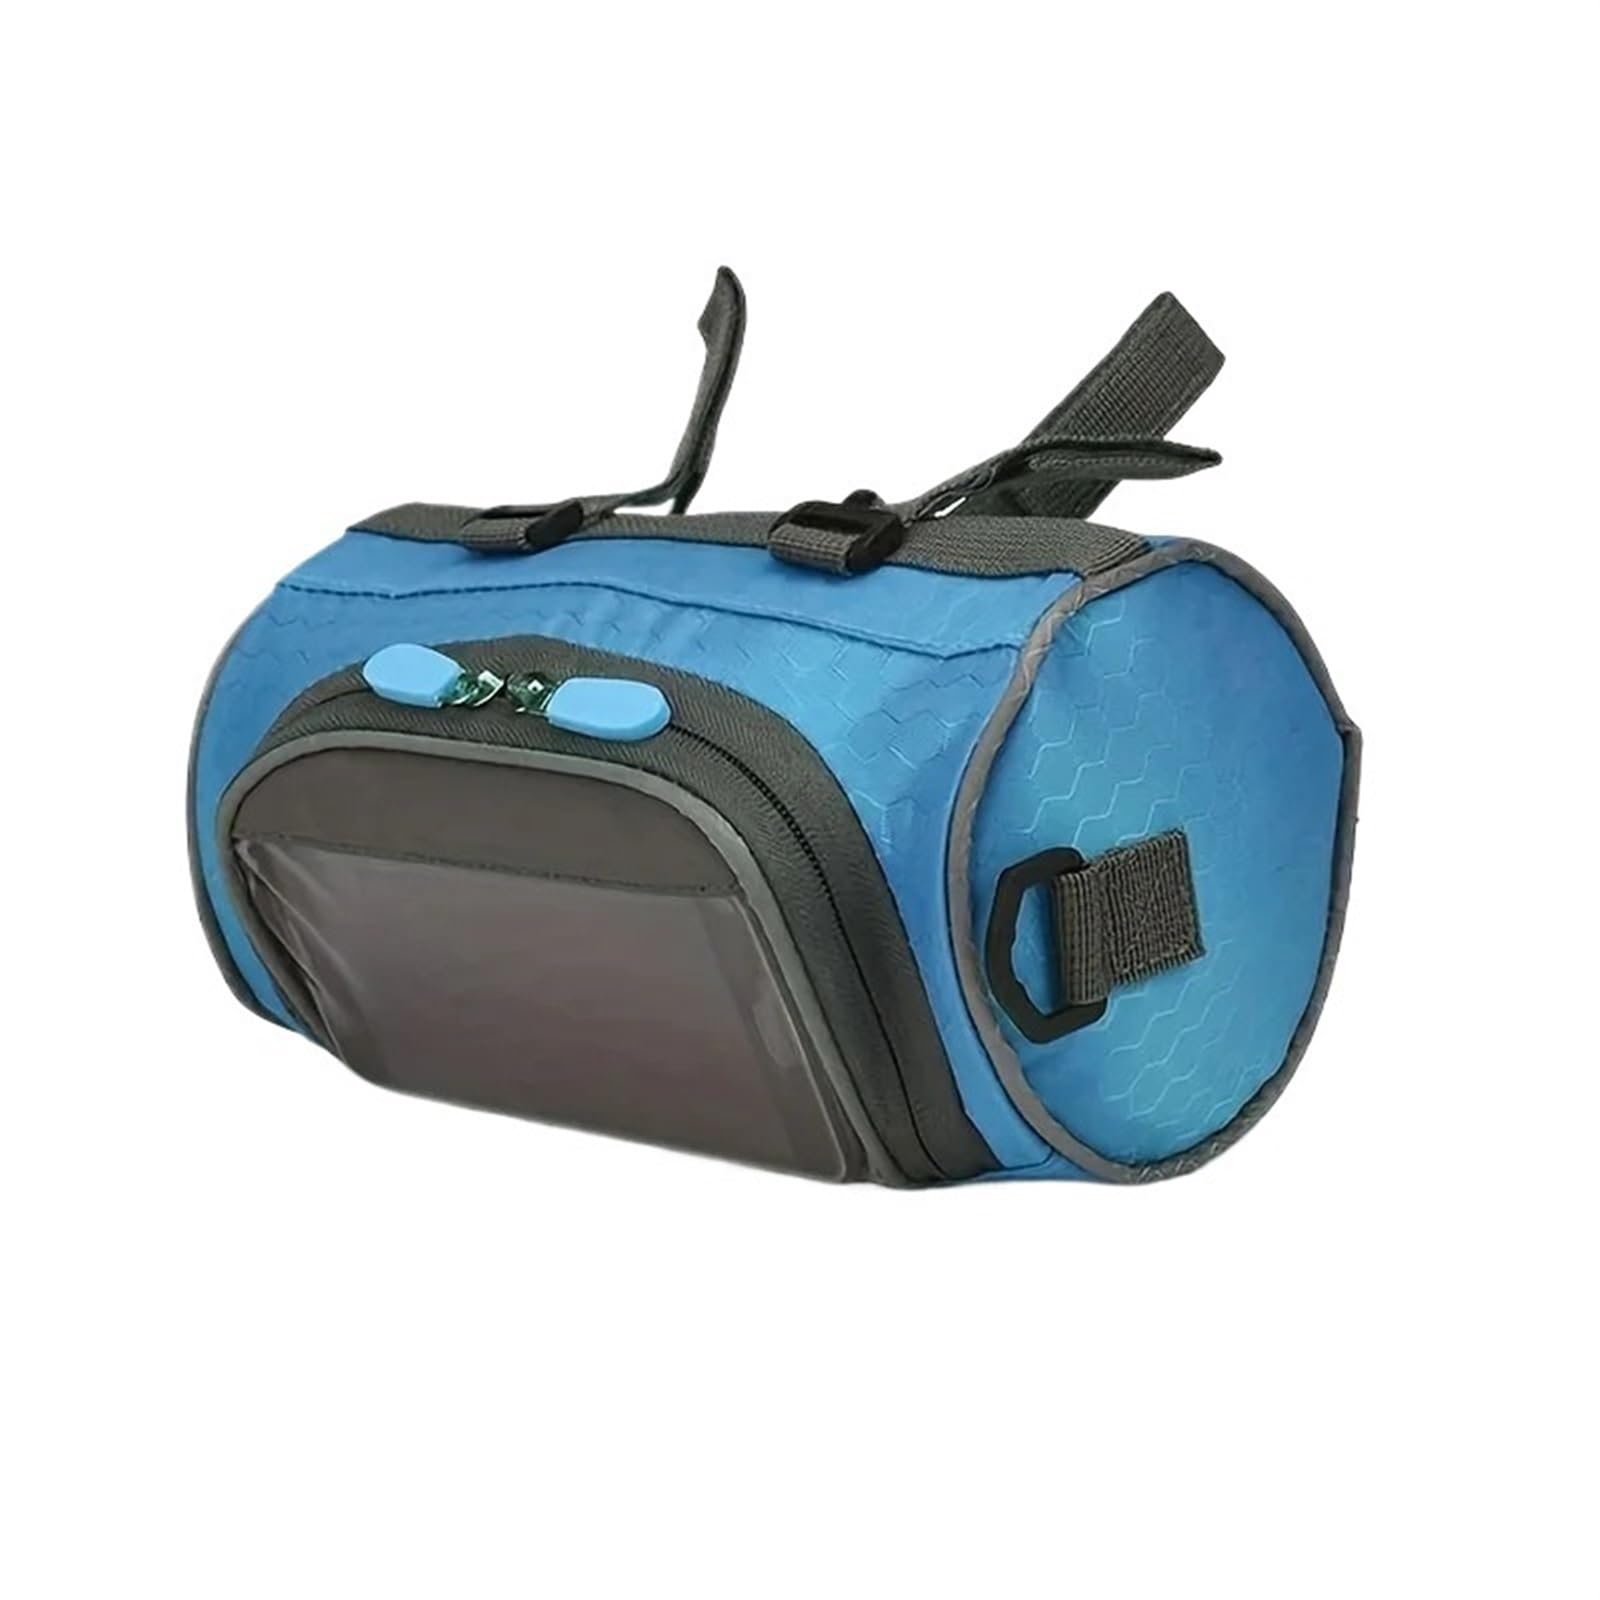 YGLEEULI Fahrradtasche Touchscreen-Fahrrad-Lenkertasche, wasserdichte Fahrrad-Frontrahmentasche, verstellbar, großes Kapazitätspaket for Outdoor-Fahrradausrüstung(1pcs sky blue) von YGLEEULI